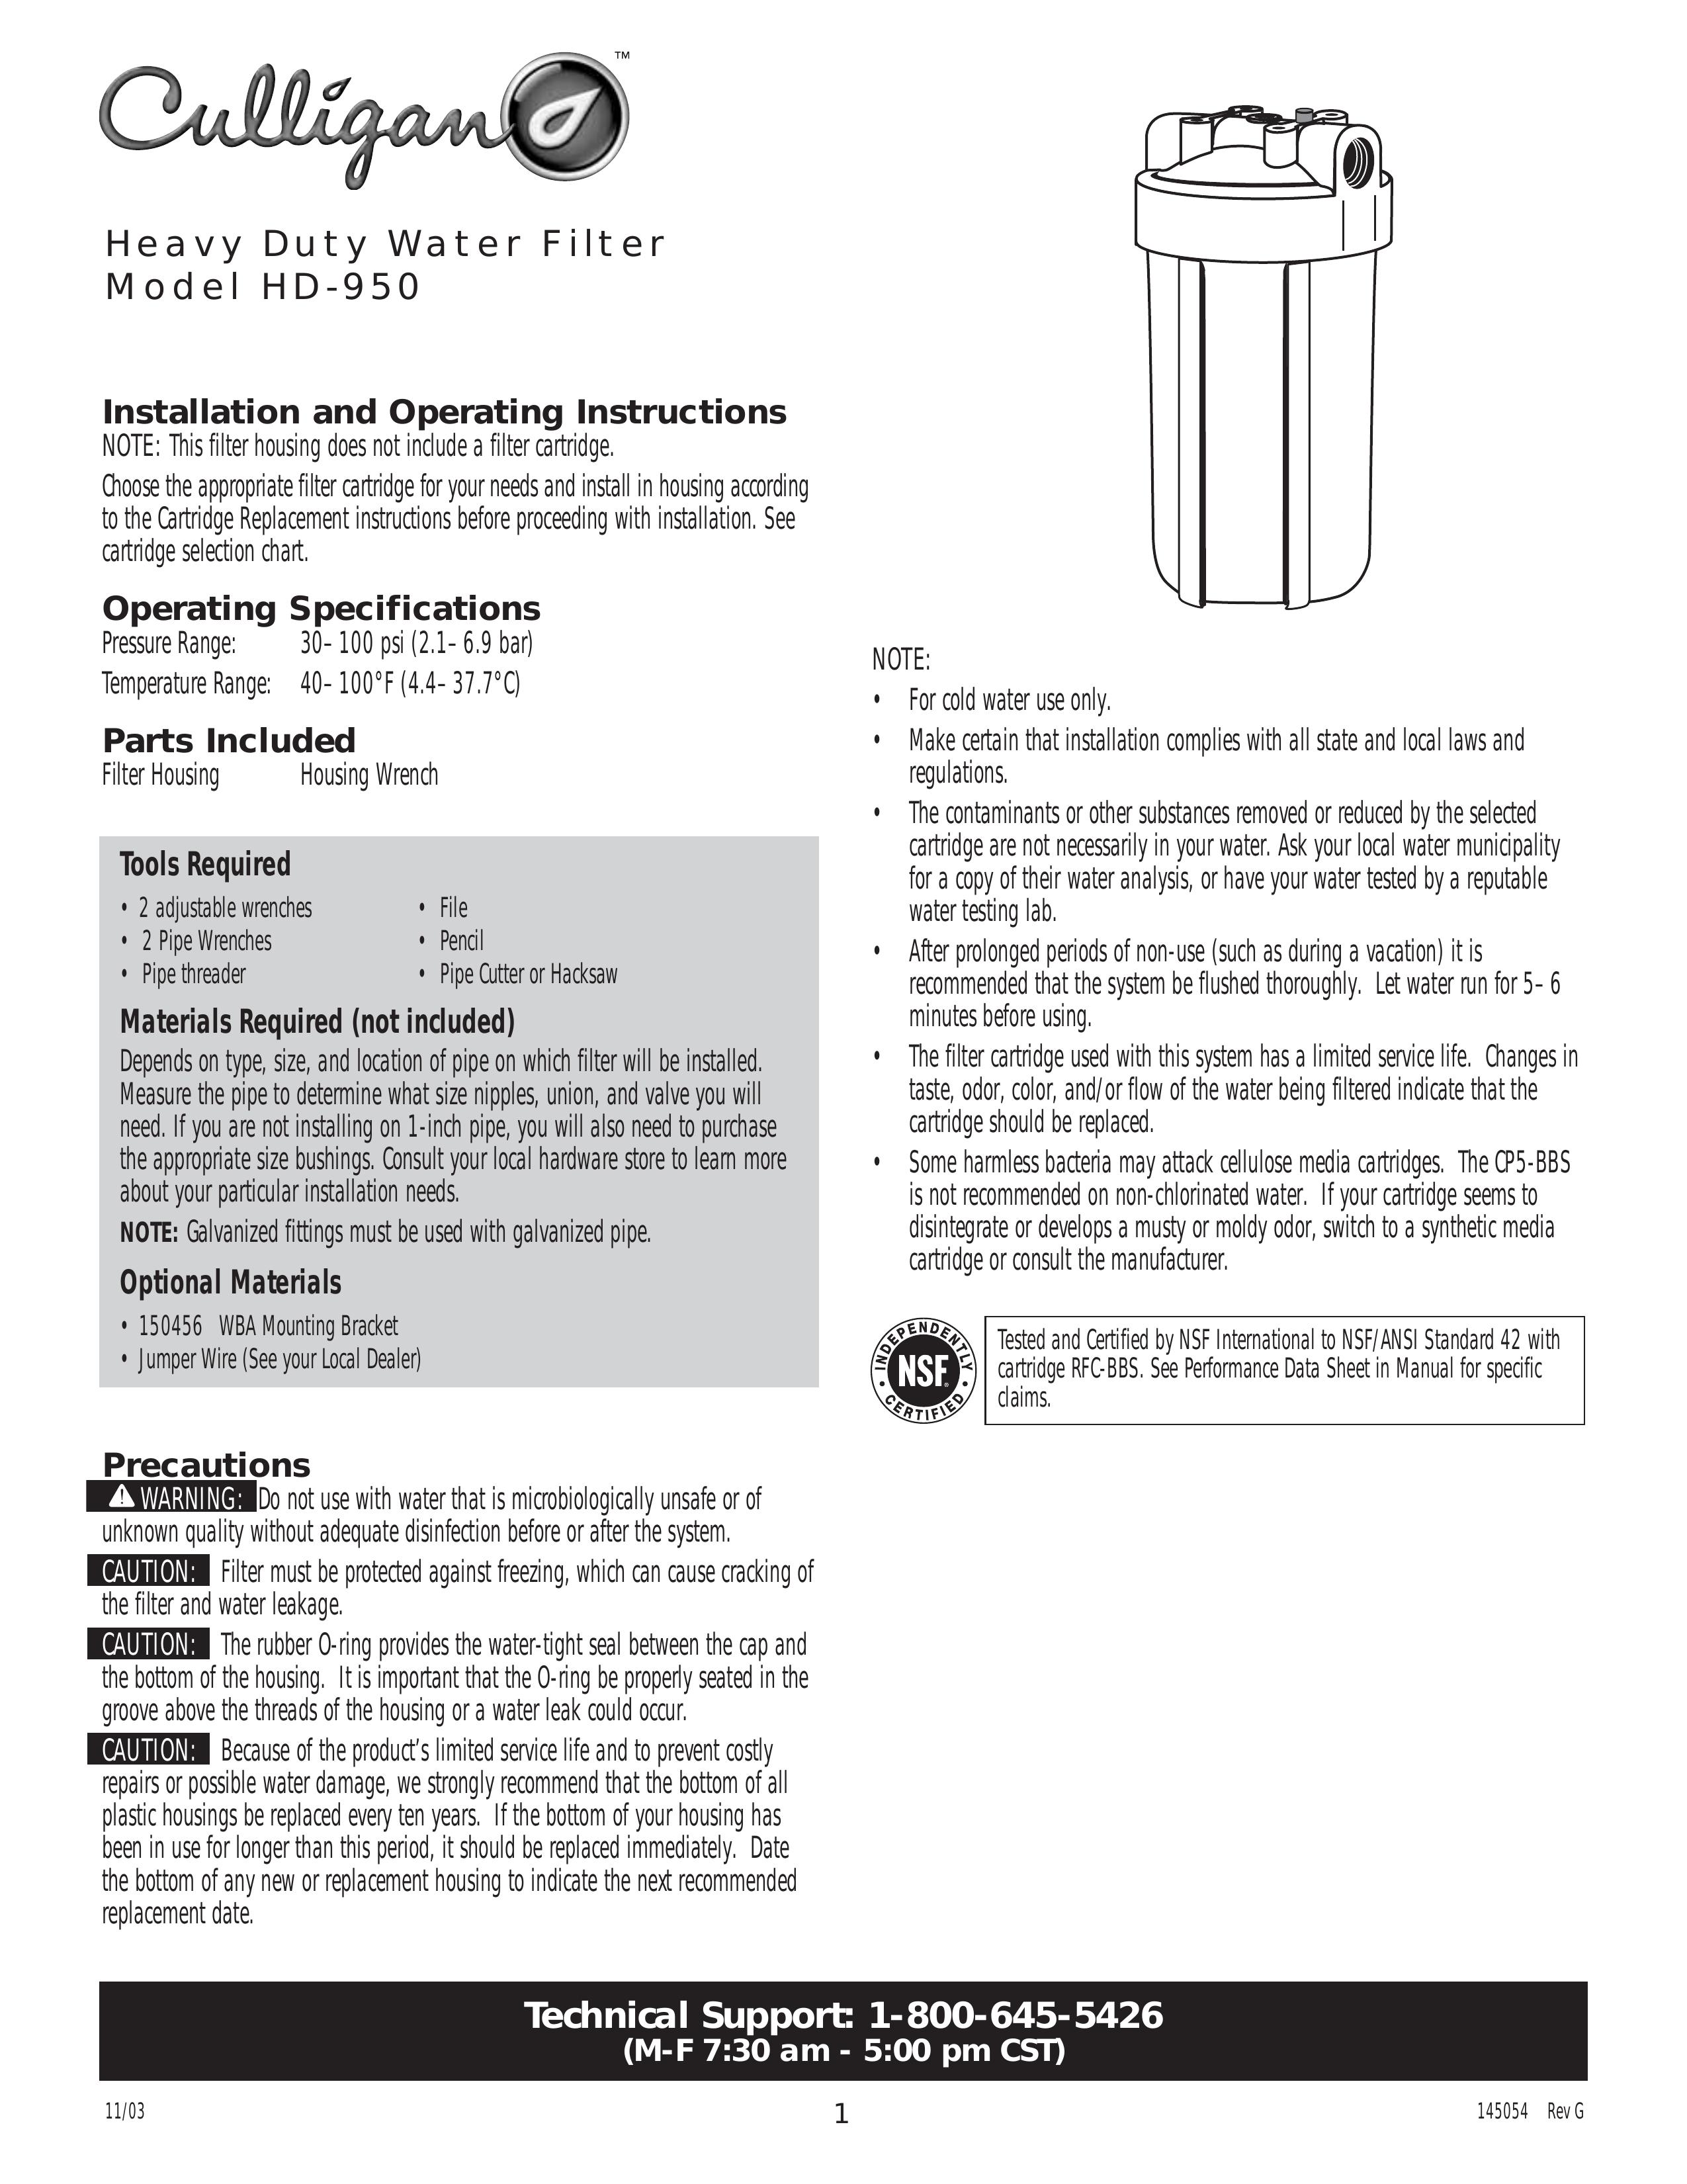 Kenmore HD-950 Water Dispenser User Manual